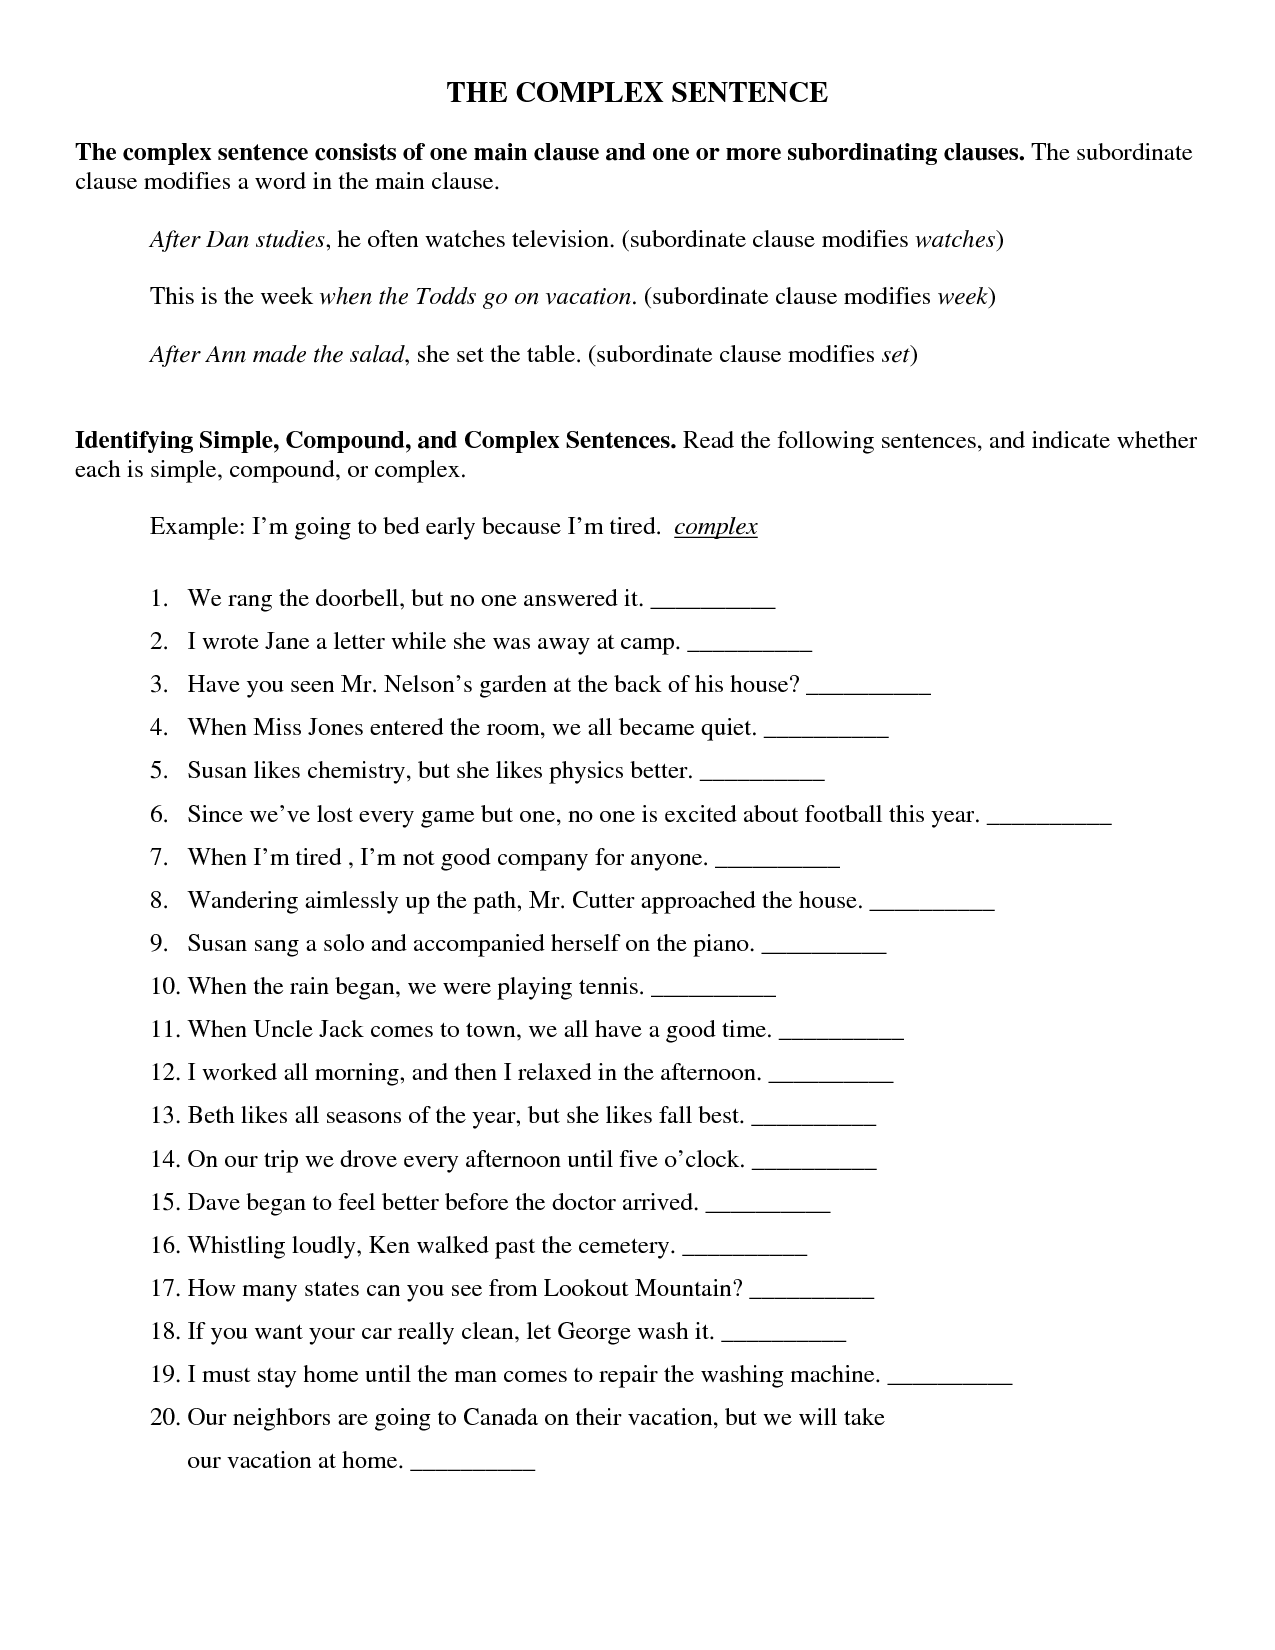 sentence-structure-worksheets-types-of-sentences-worksheets